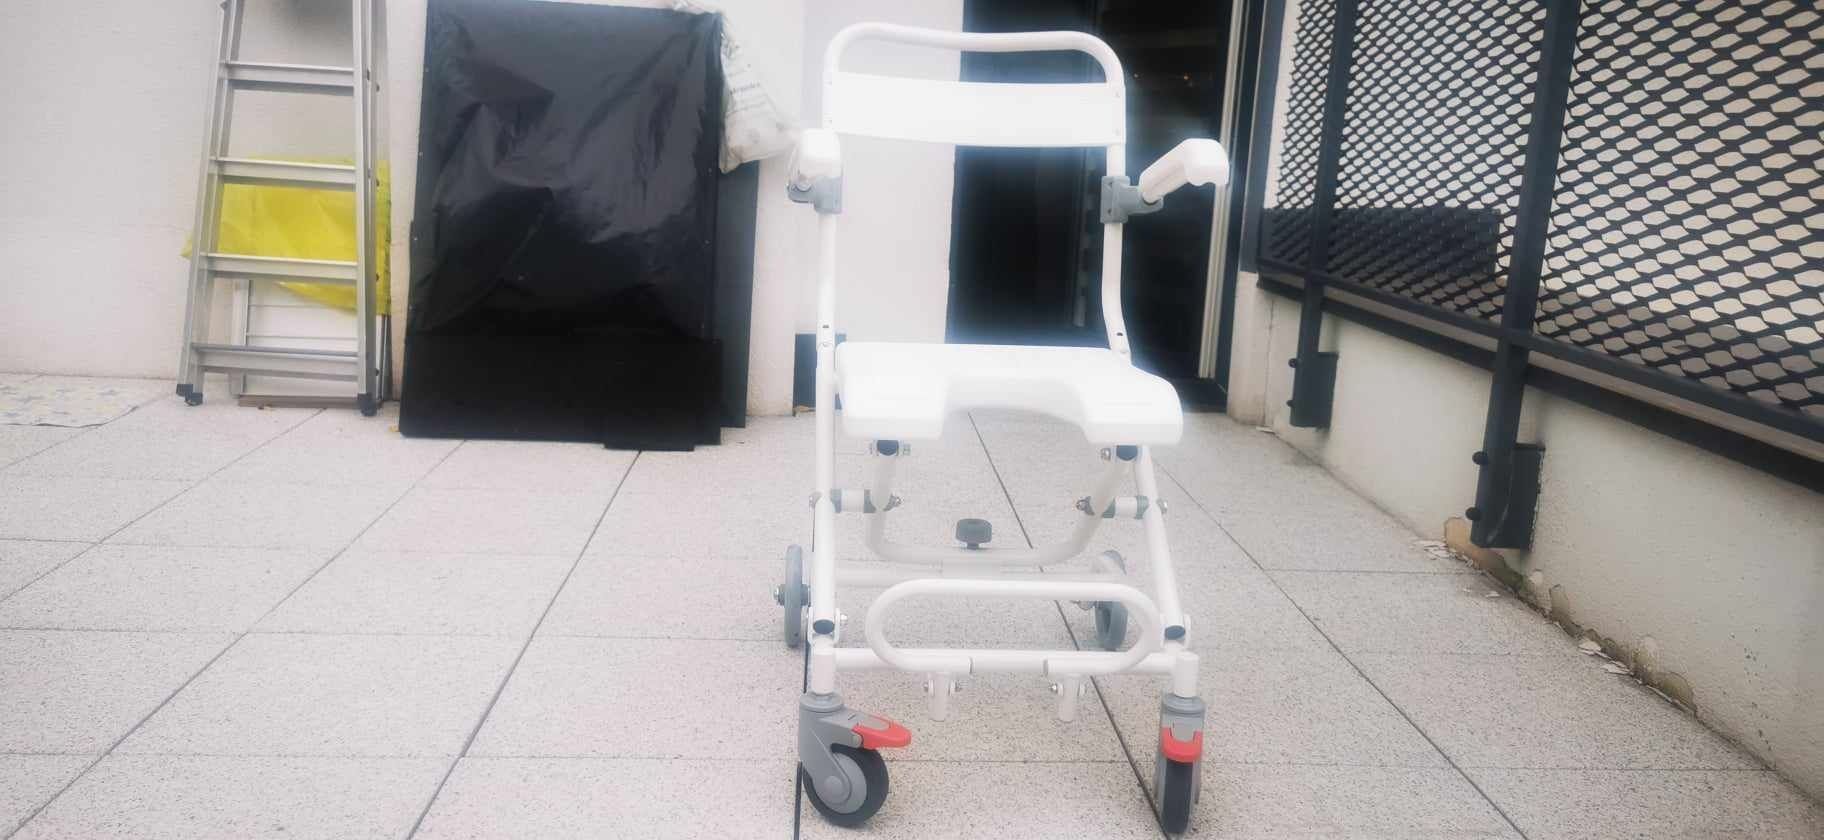 Wózek pod natrysk krzesełko fotel dla niepełnosprawnej osoby